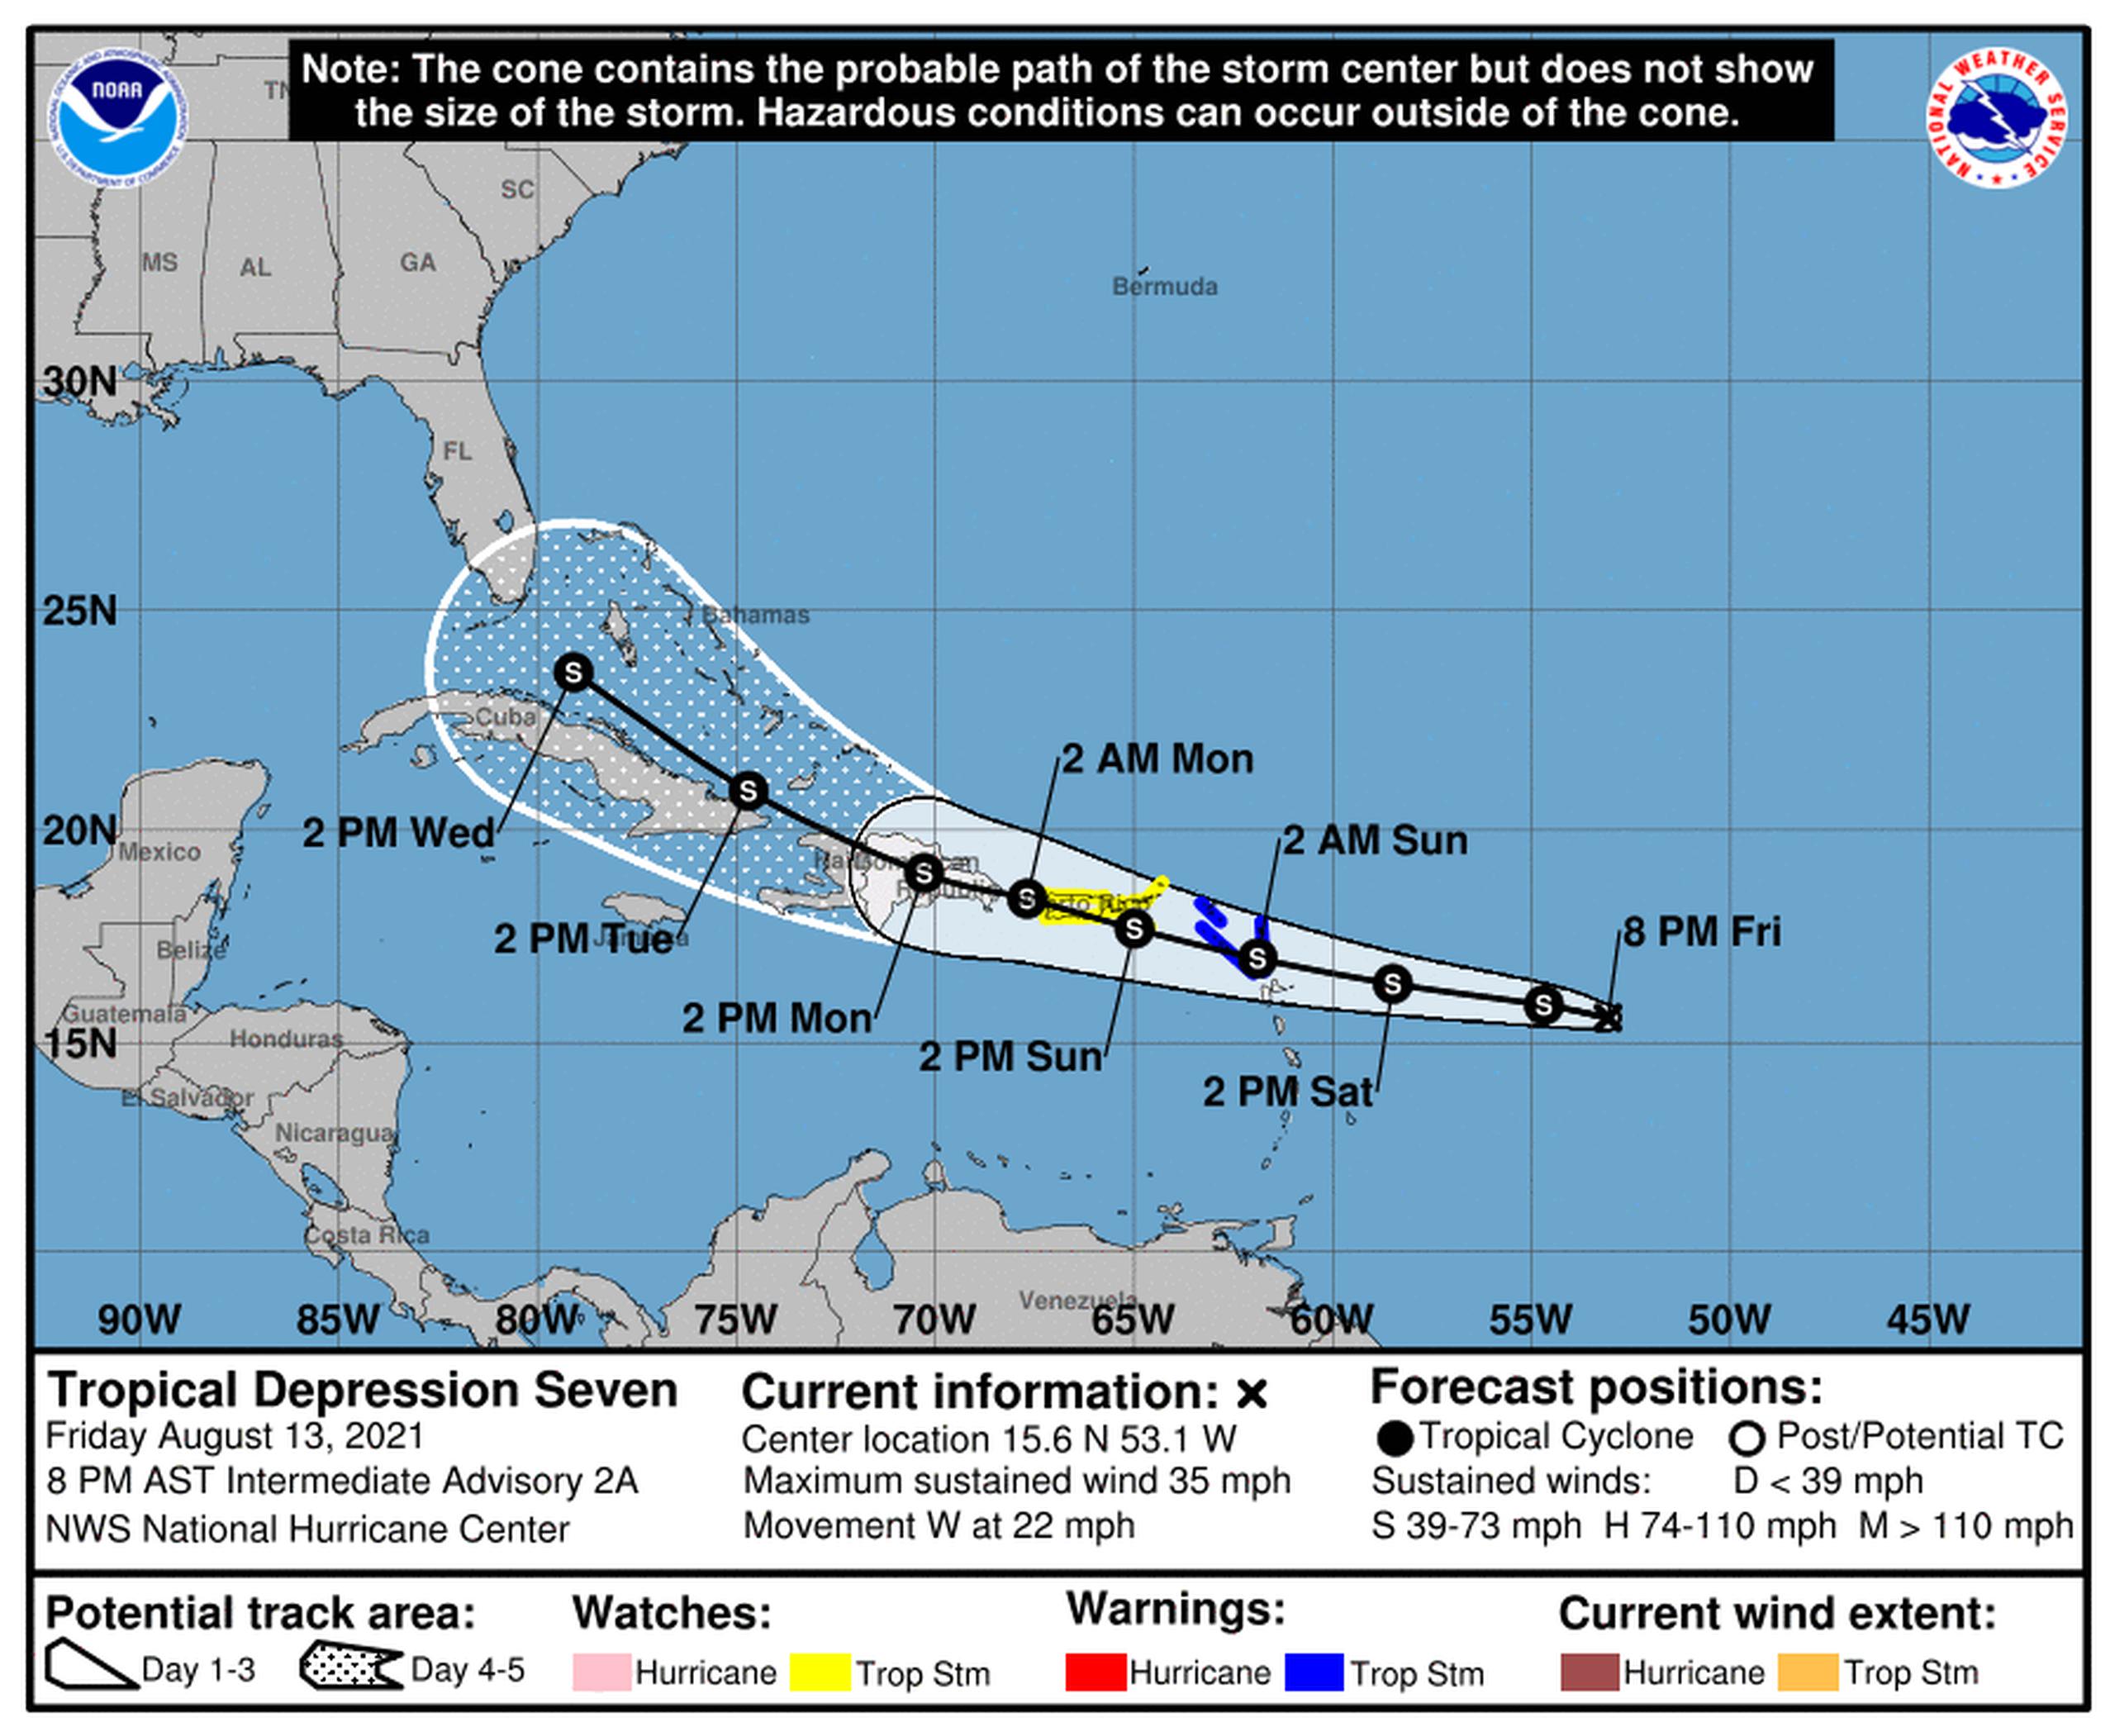 Cono de incertidumbre para la depresión tropical 7, según el boletín intermedio de las 8:00 de la noche.